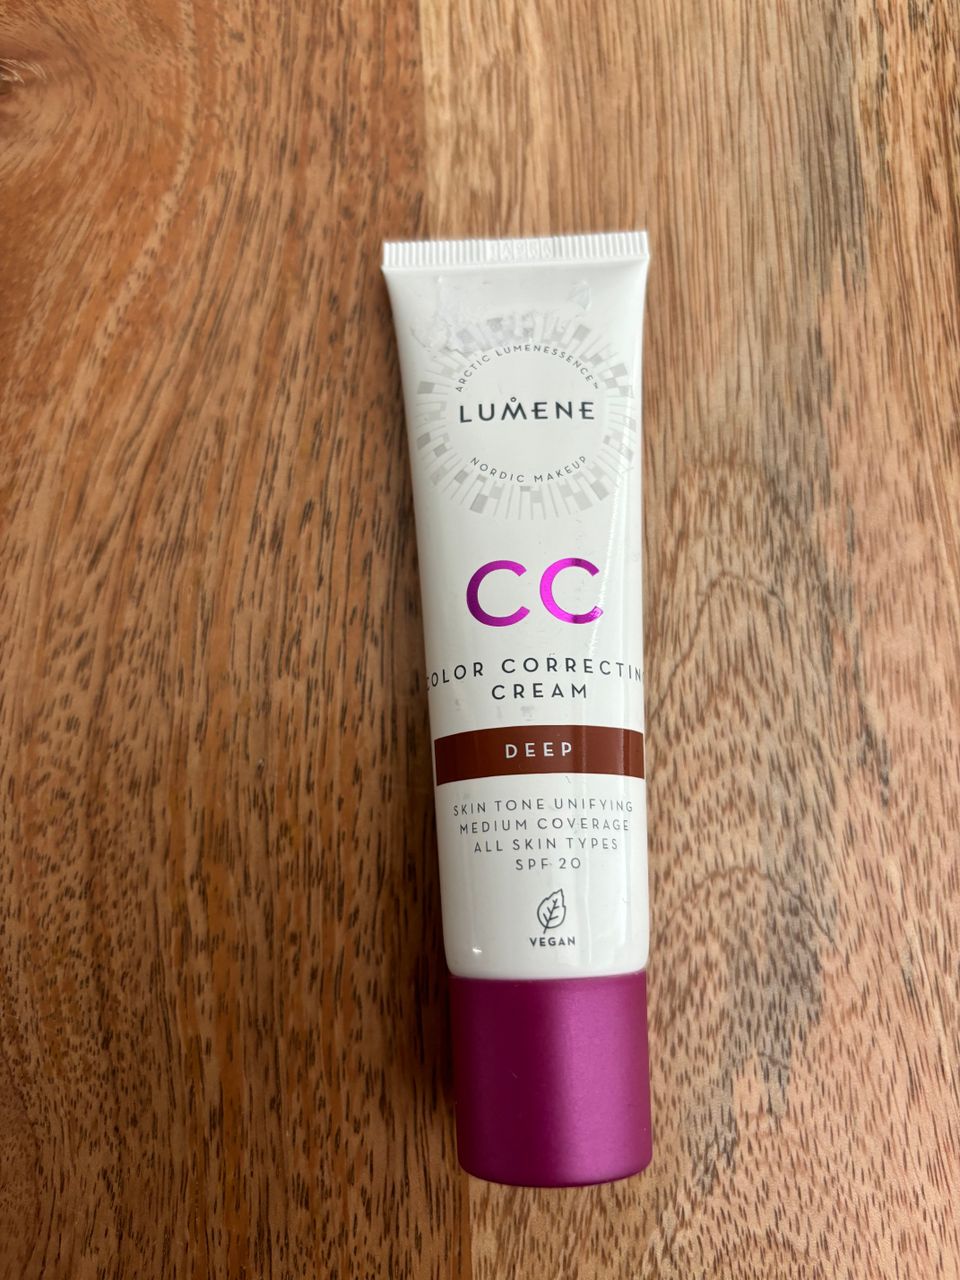 Lumene CC color Correcting Cream